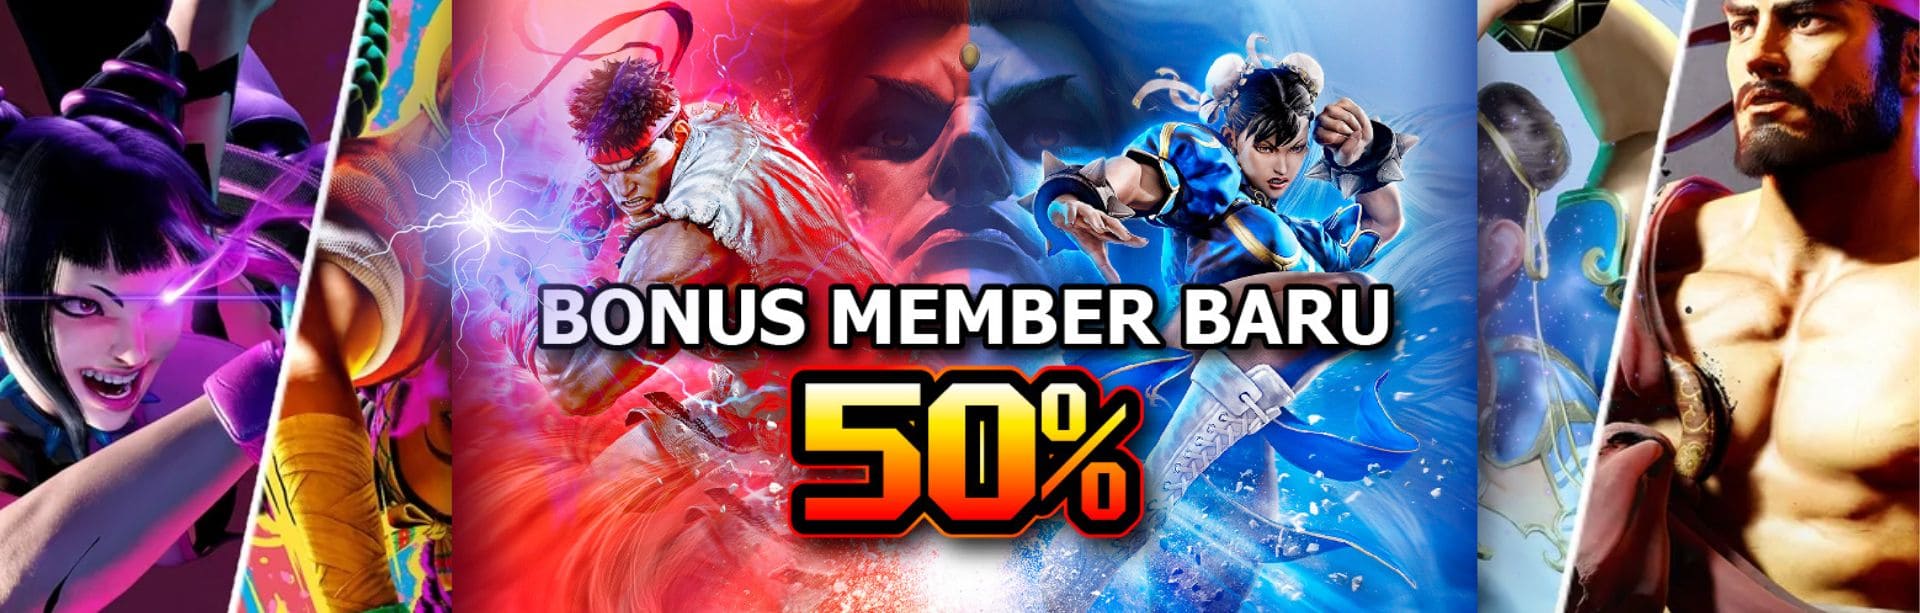 Bonus member baru 50% BOXING55